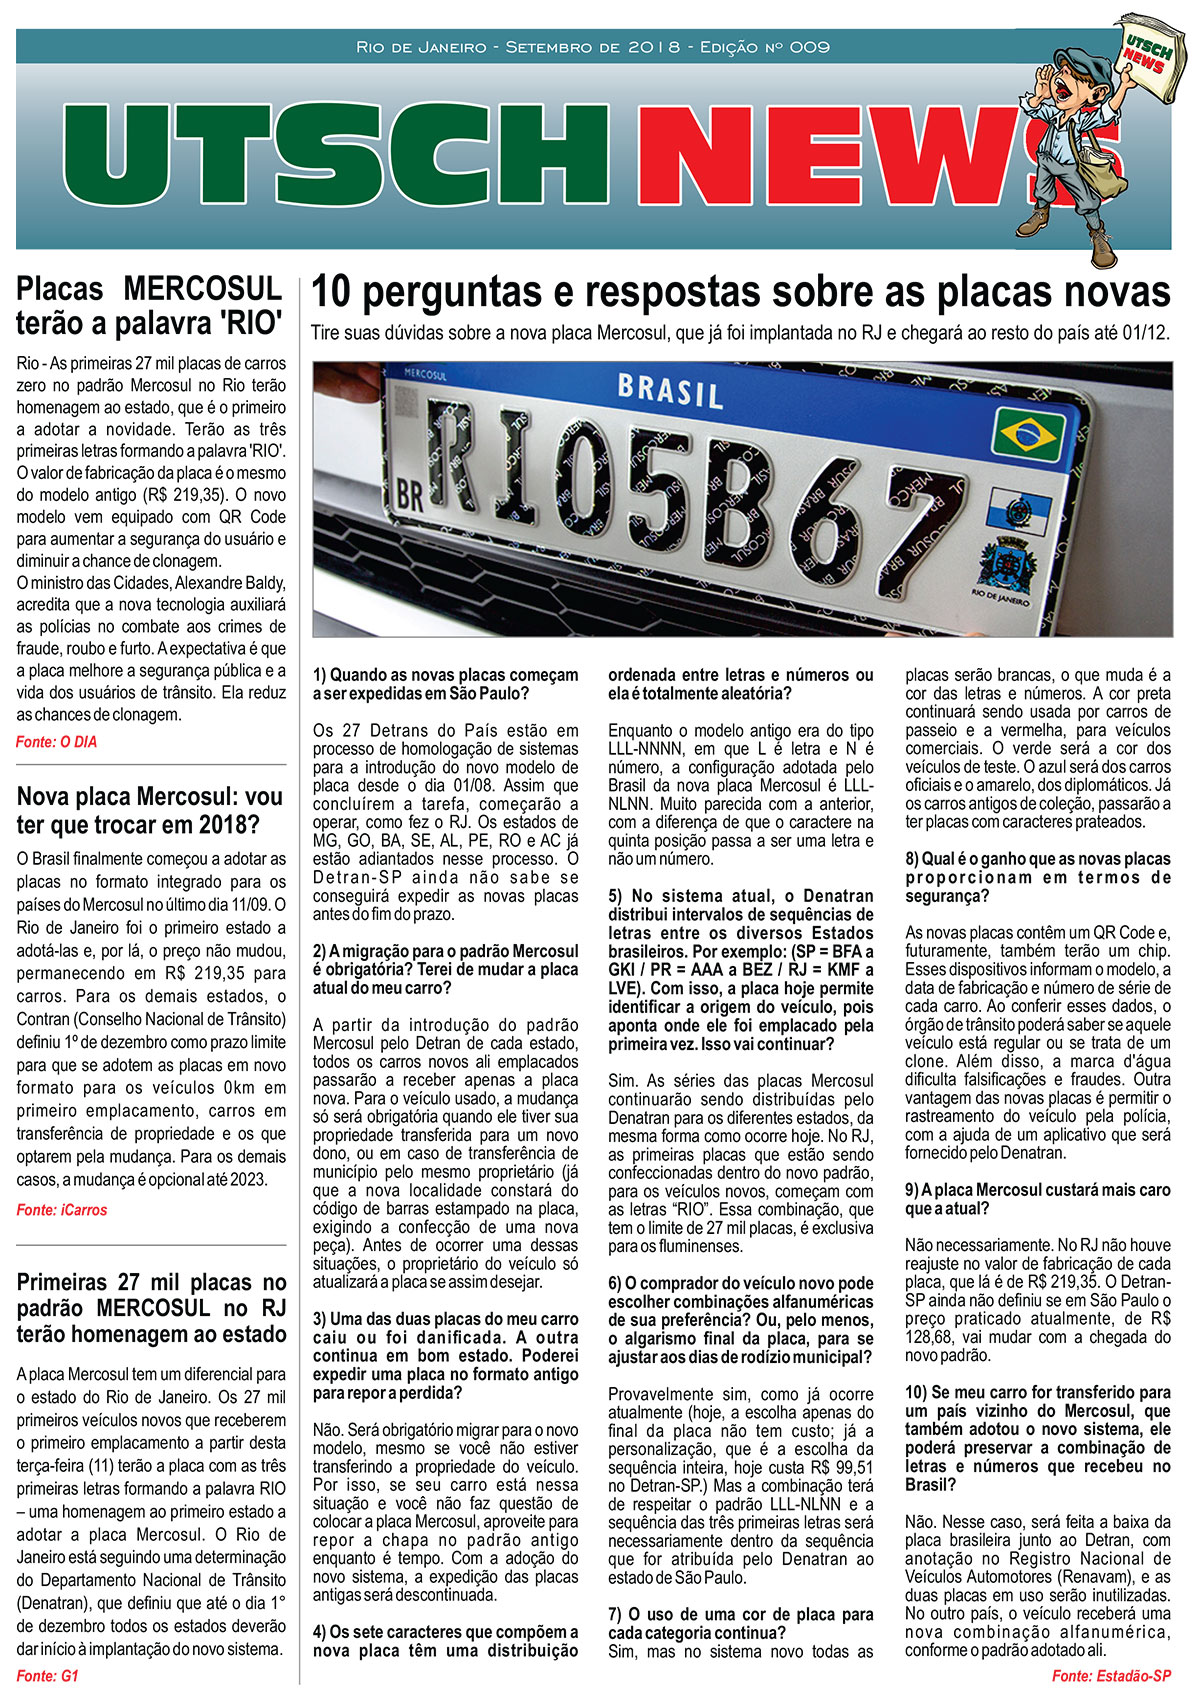 Jornal-UTSCH-BRASIL---edição-009